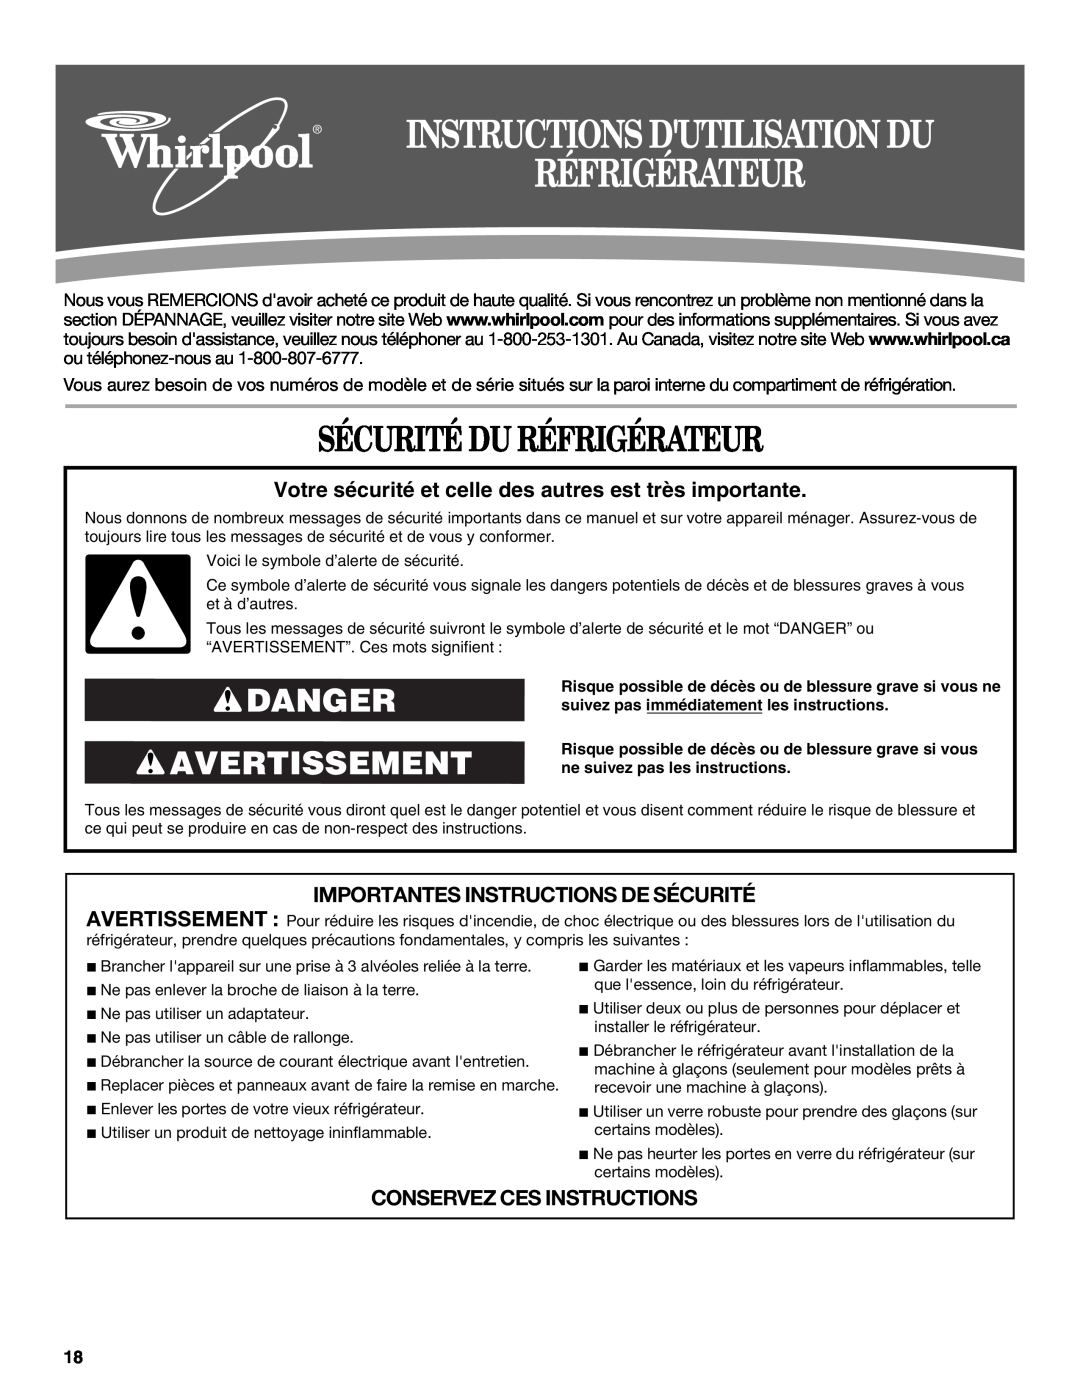 Whirlpool W10193164A Sécurité Du Réfrigérateur, Danger Avertissement, Importantes Instructions De Sécurité 